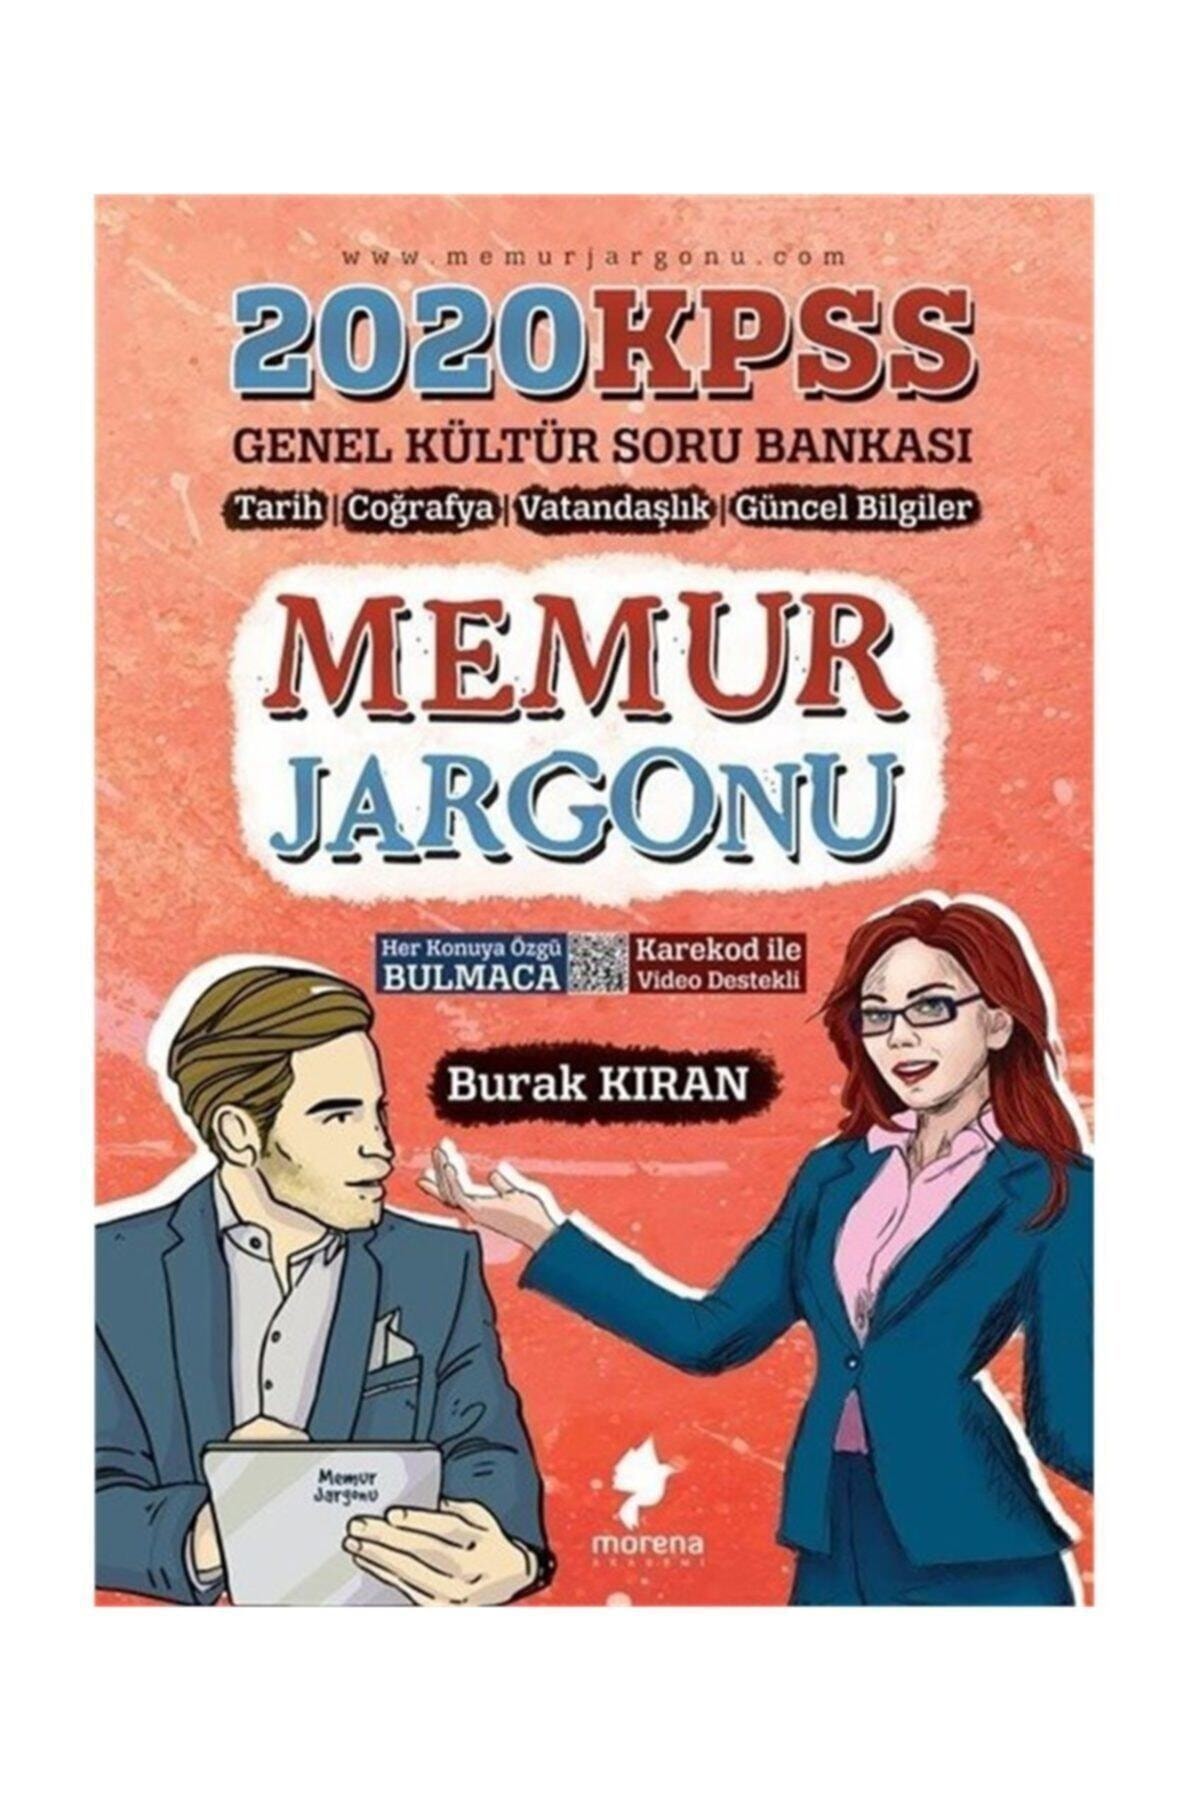 2020 Kpss Memur Jargonu Genel Kültür Soru Bankası